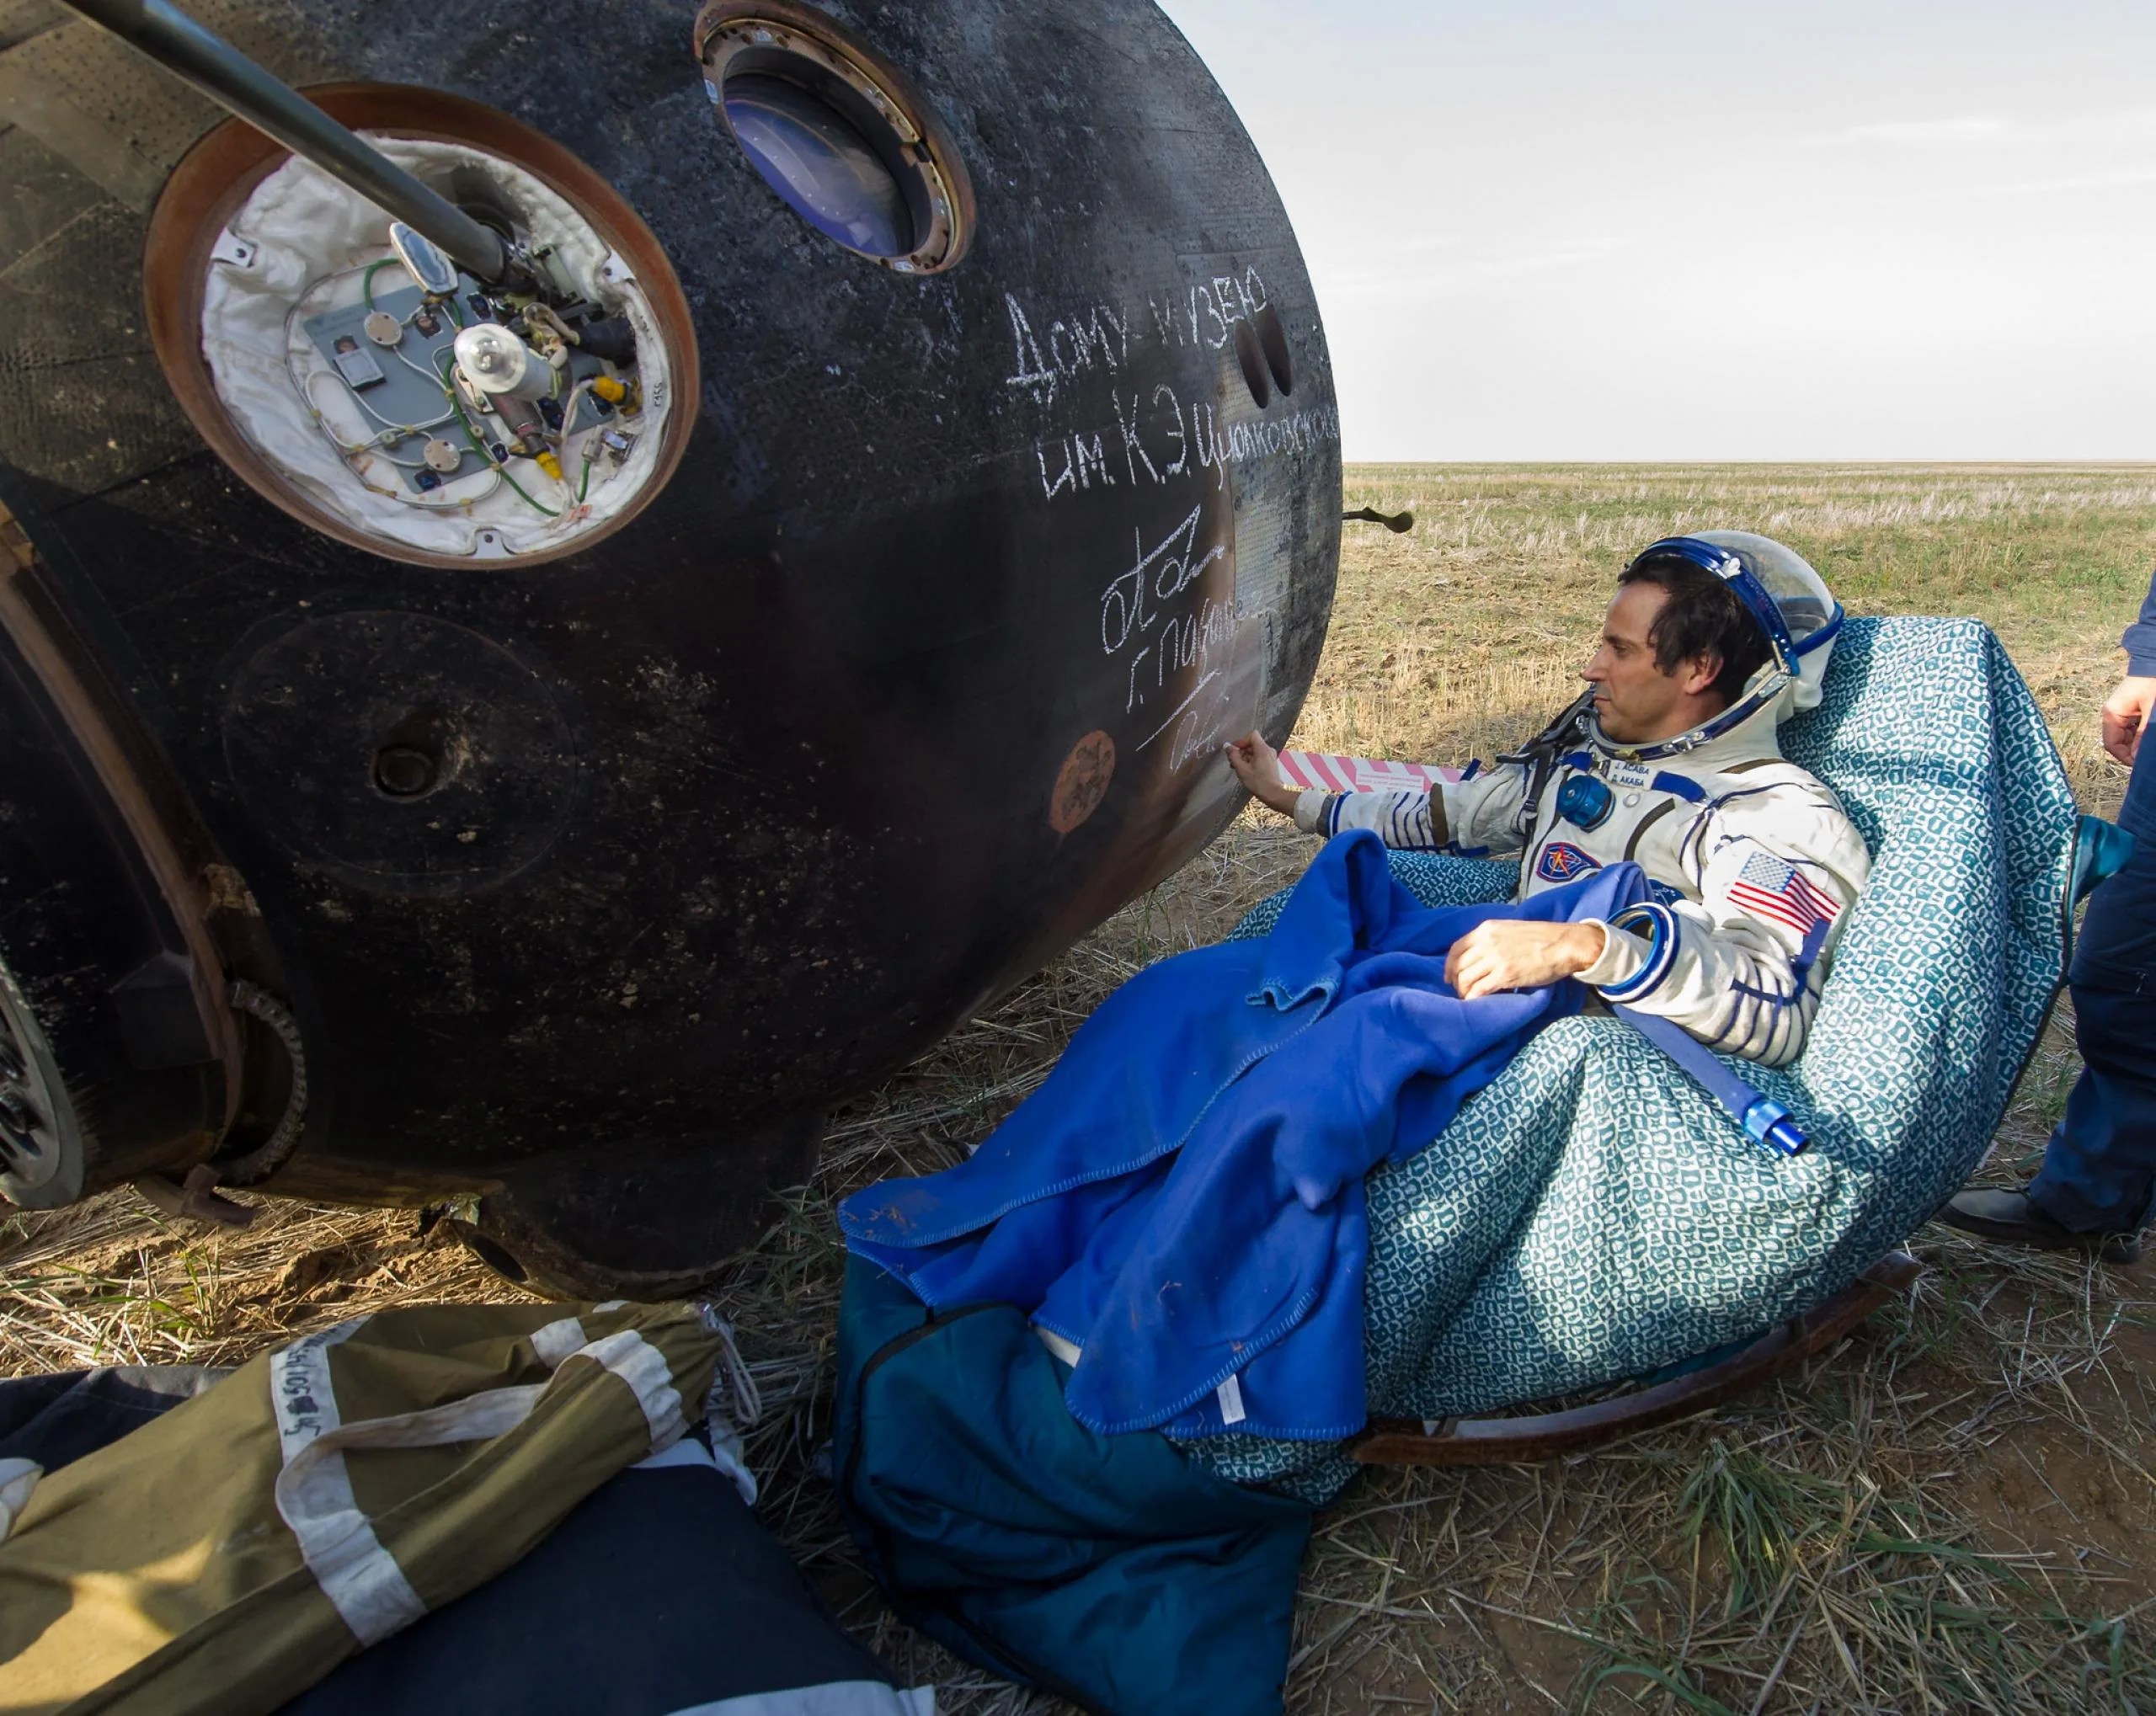 Joe Acabá firma el costado de su nave espacial Soyuz TMA-04M poco después de aterrizar con sus compañeros de tripulación en un área remota cerca de la ciudad de Arkalyk, Kazajstán, el 17 de septiembre de 2012 luego de cinco meses a bordo de la estación espacial. Créditos: NASA / Carla Cioffi